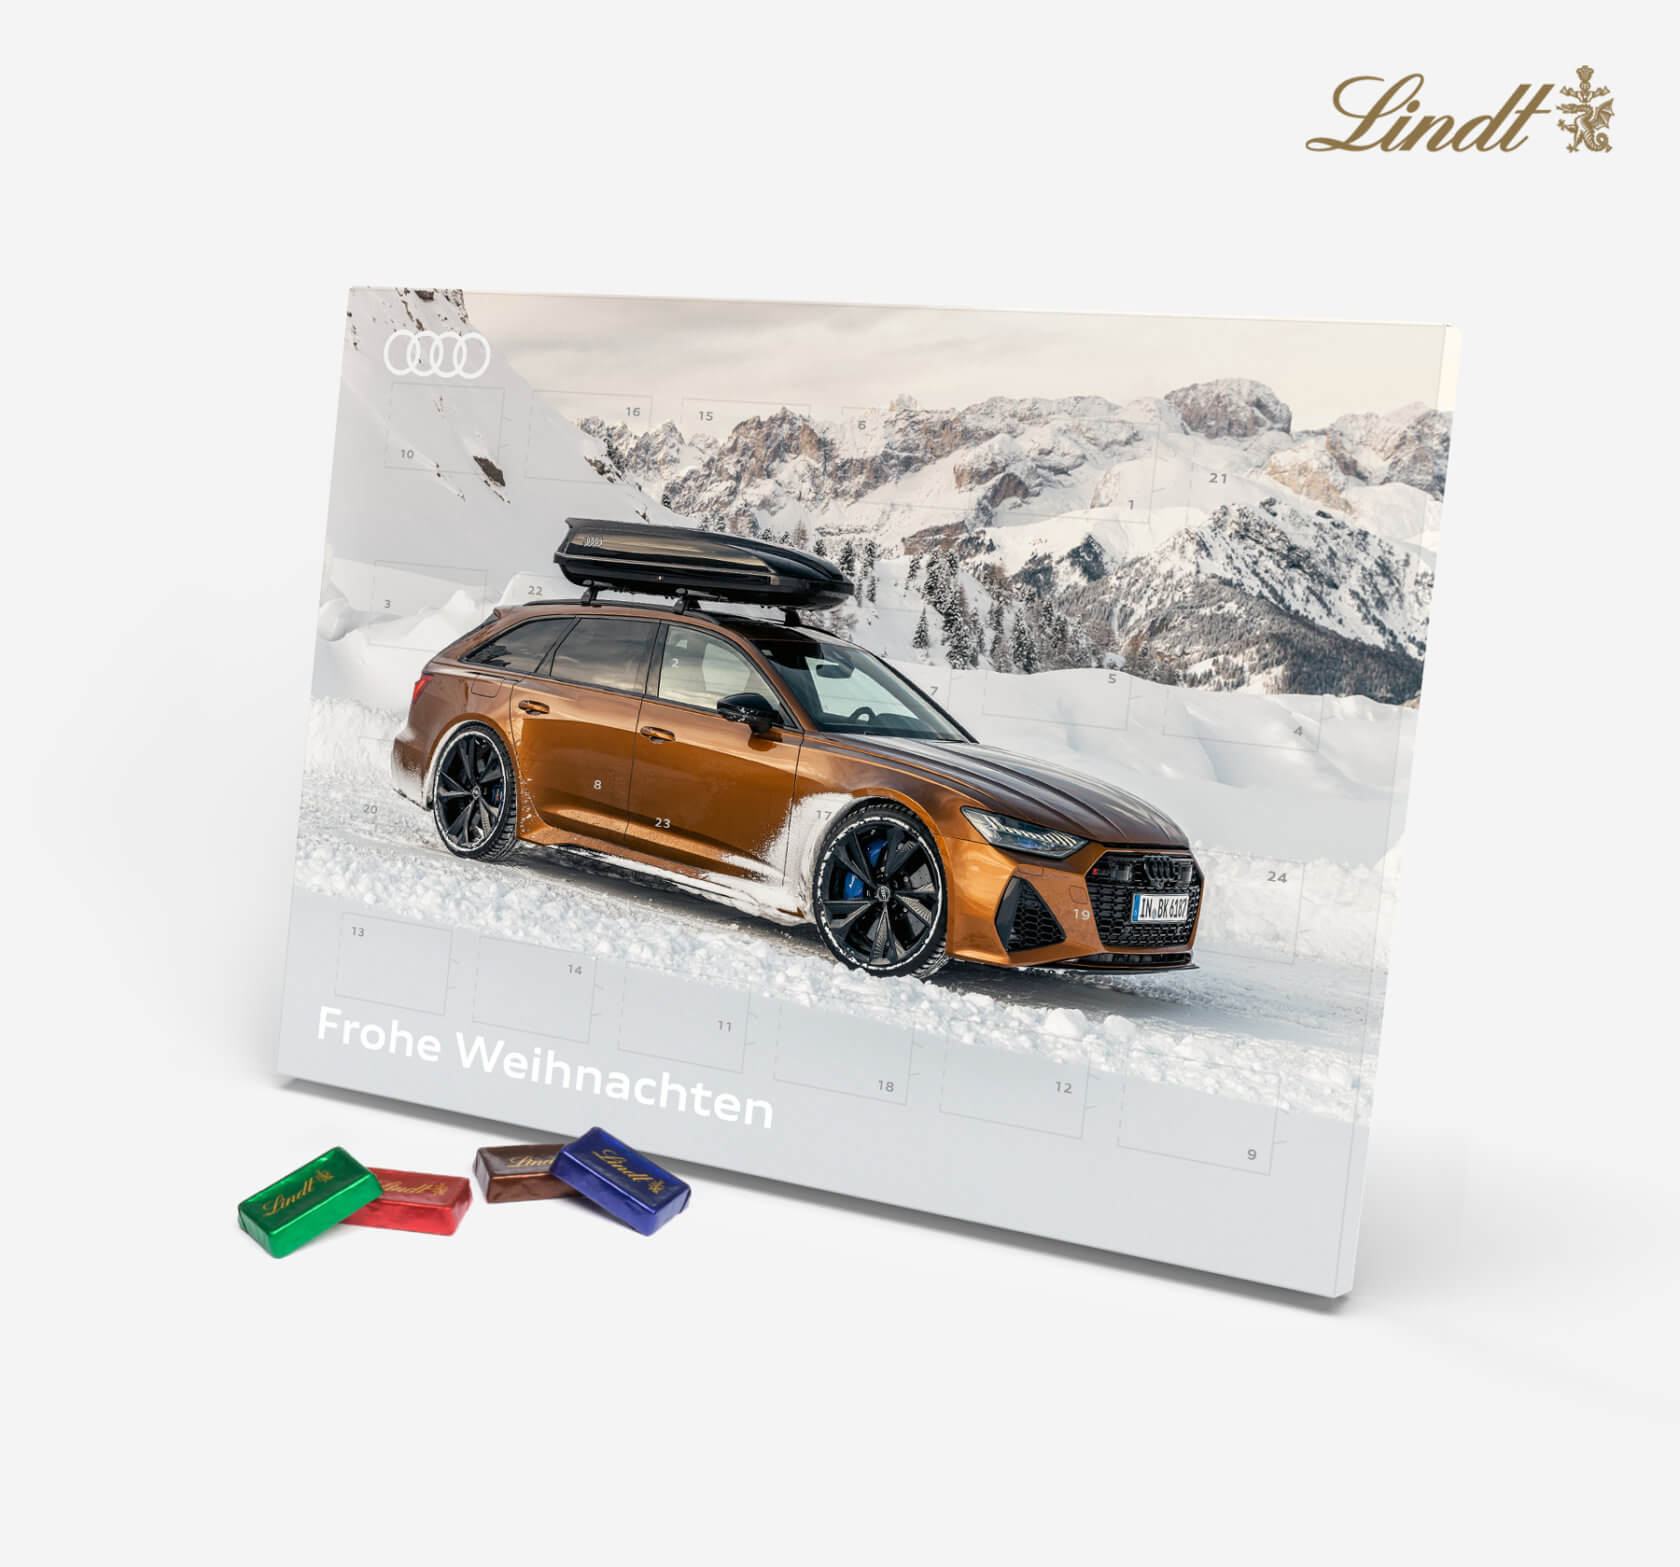 Audi Adventskalender mit Lindt Schokolade | Audi RS 6 Avant